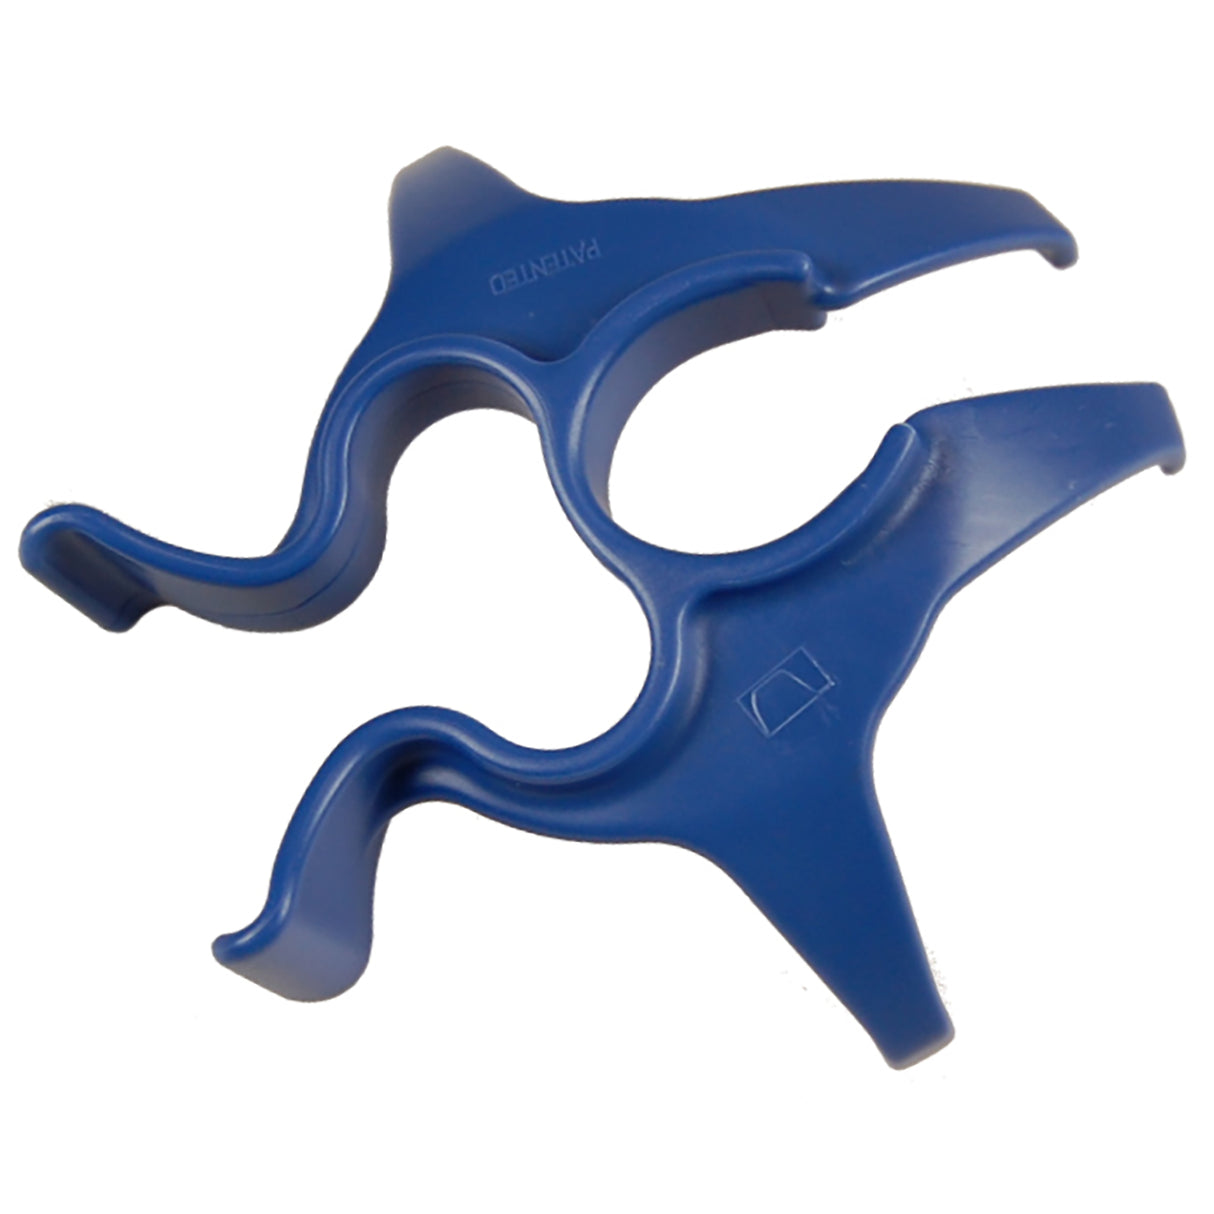 Slangeholder Blue Star form